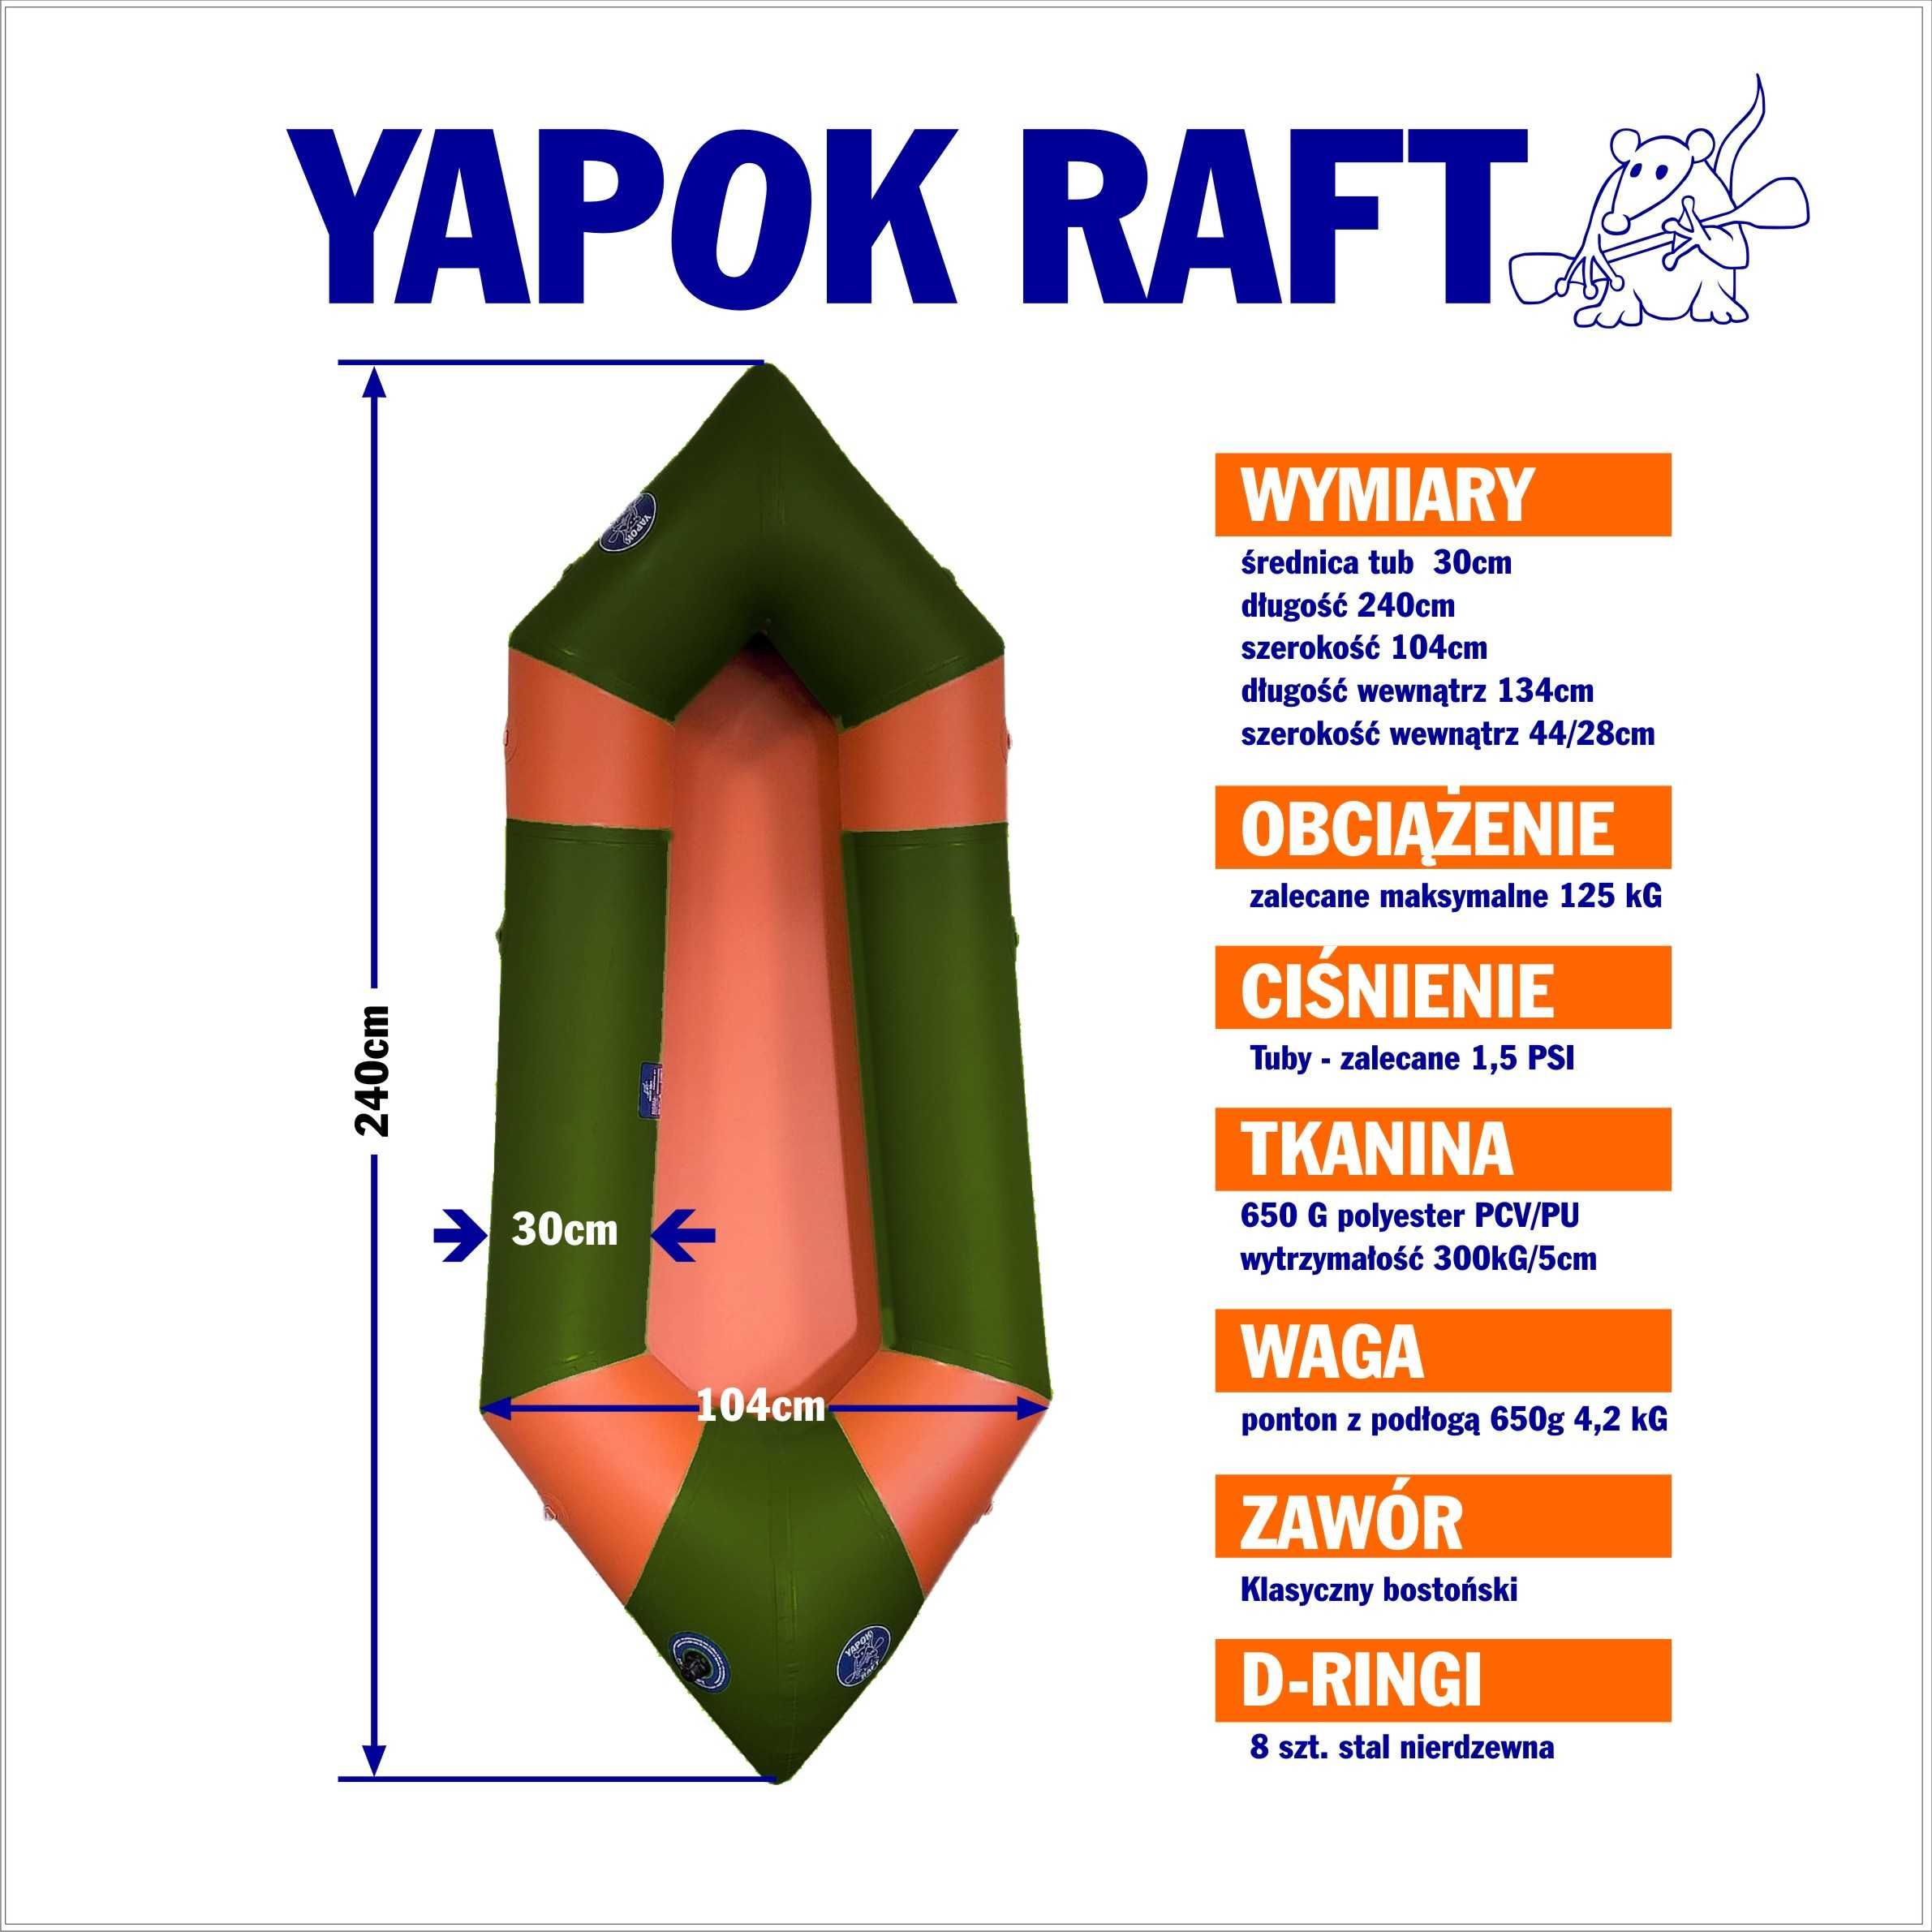 Packraft Yapokraft polski packraft, 4kg, kajak pompowany, dmuchaniec